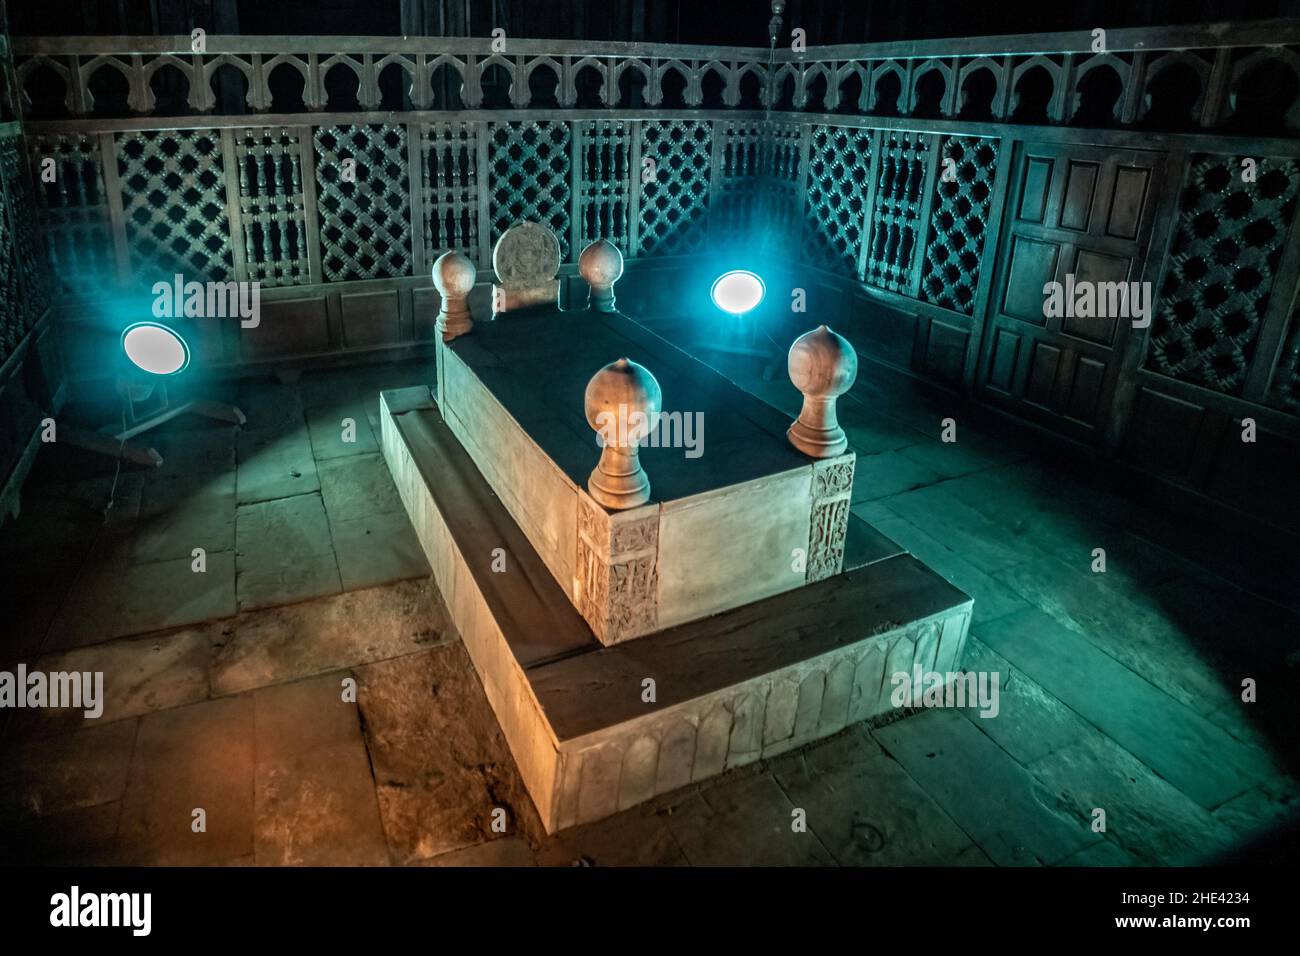 Das Mausoleum in der Moschee Madrasa von Sultan Hassan, einem historischen islamischen Denkmal in Kairo, Ägypten. Stockfoto